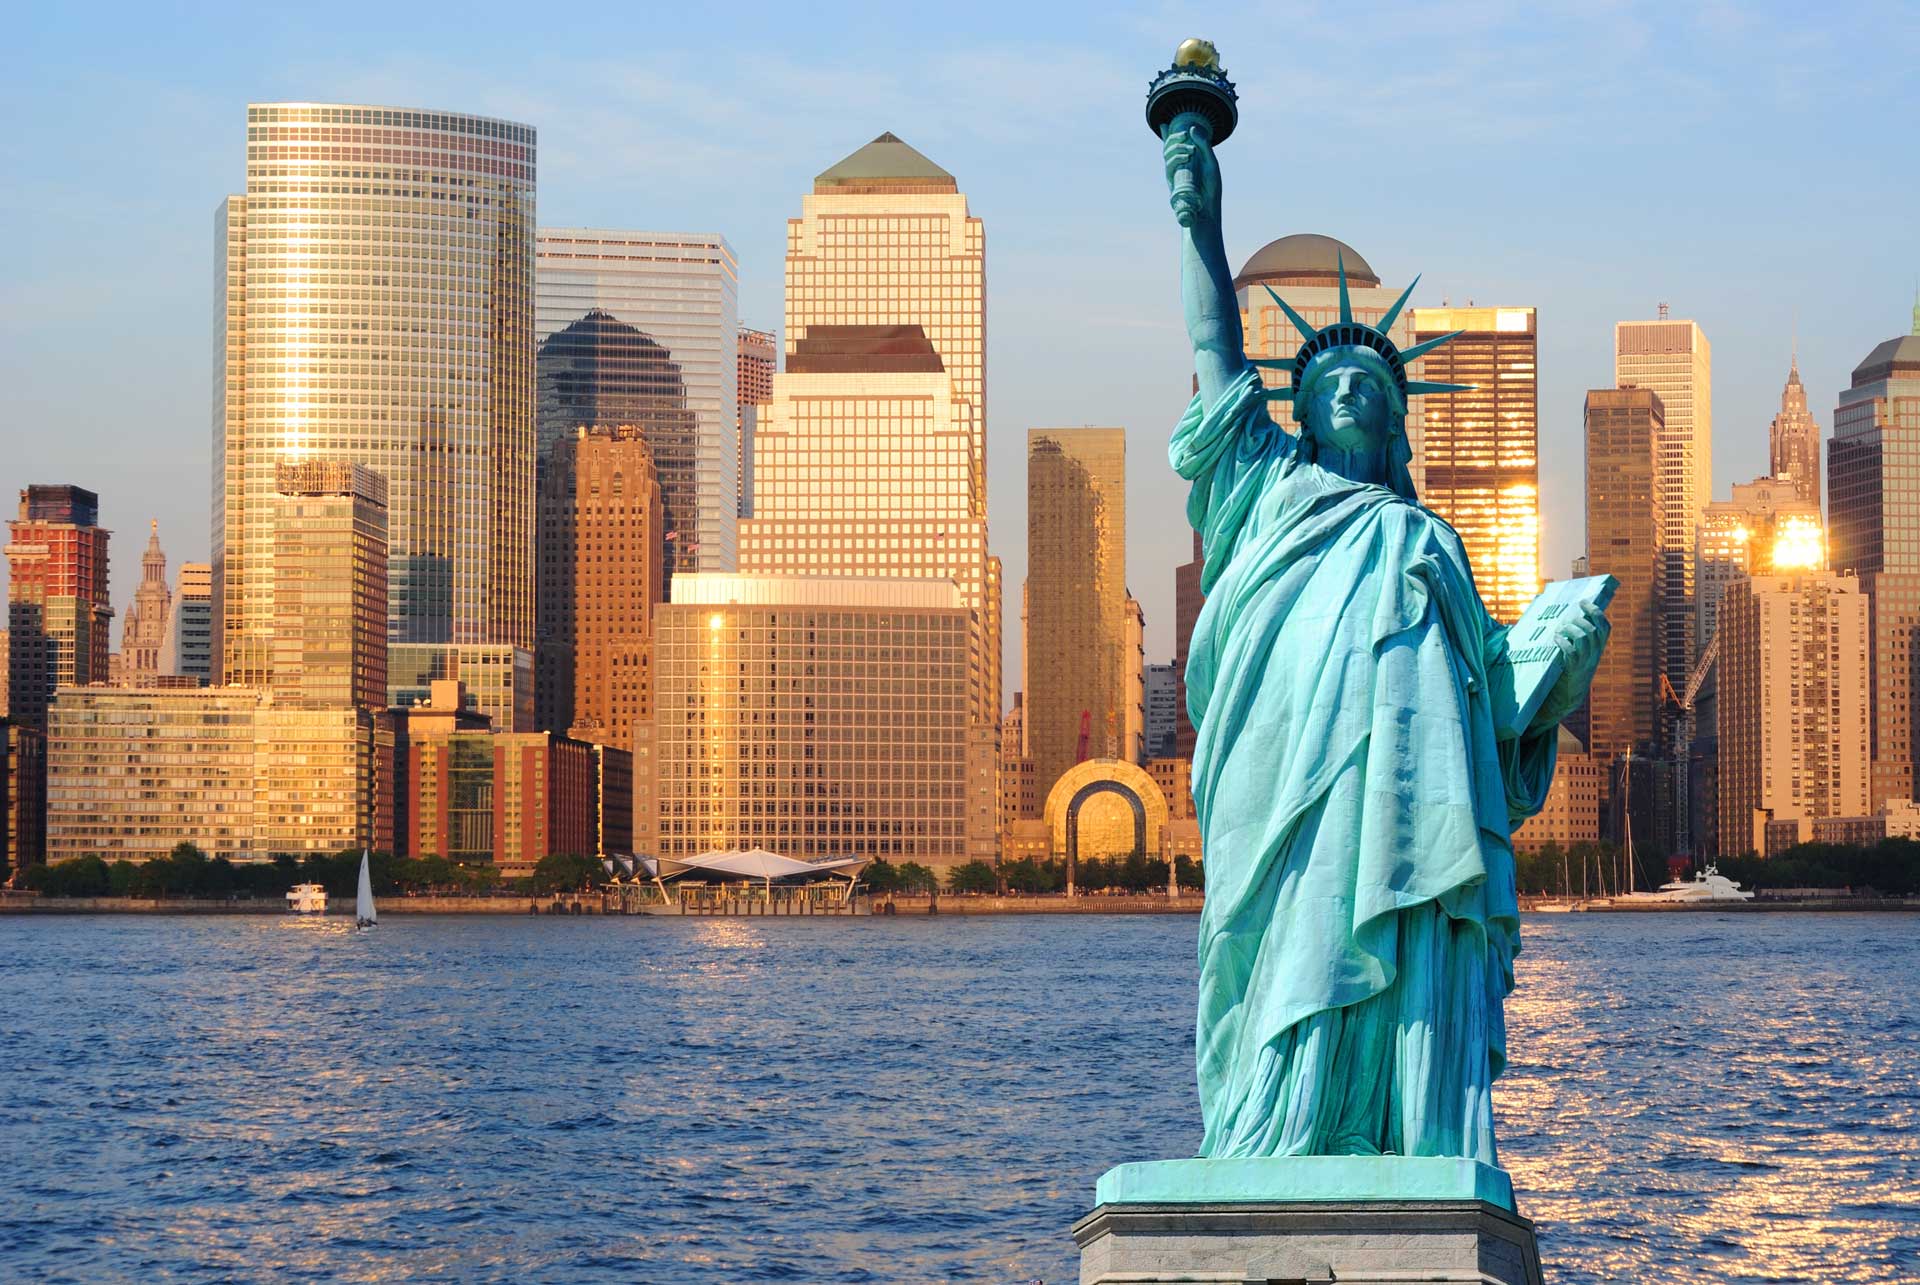 Америка. США Нью-Йорк статуя свободы. Статуя свободы Нью-йор. Нью-Йорк бстатуясвободы. Достопримечательности Нью-Йорка статуя свободы.